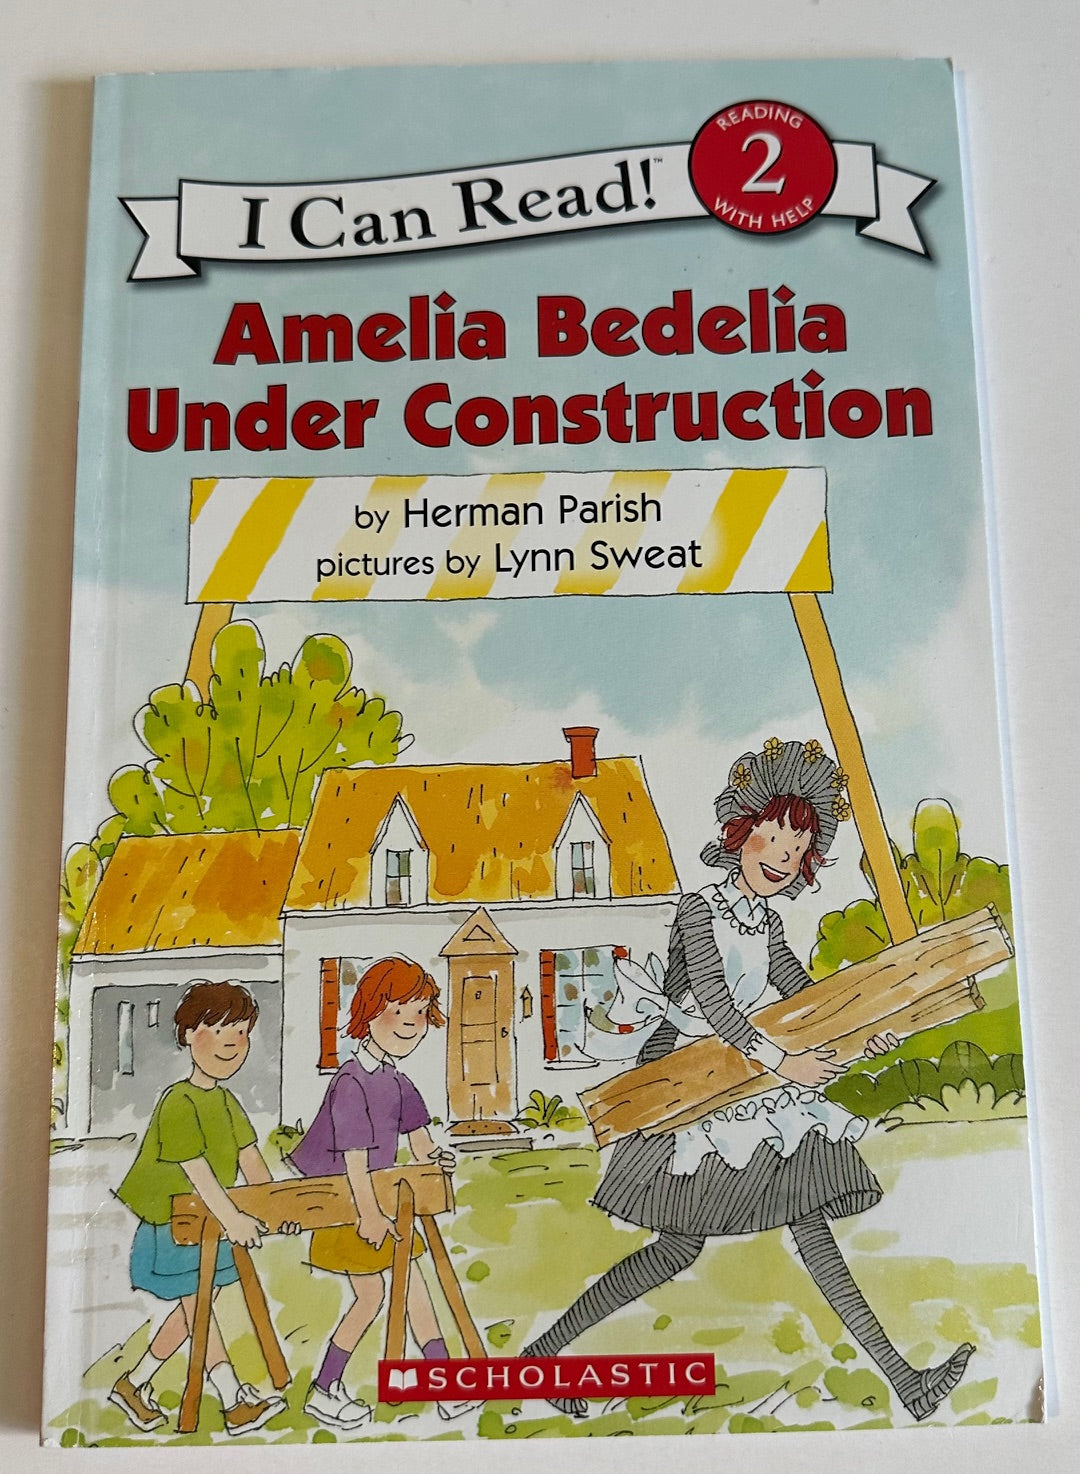 "Amelia Bedelia Under Construction"